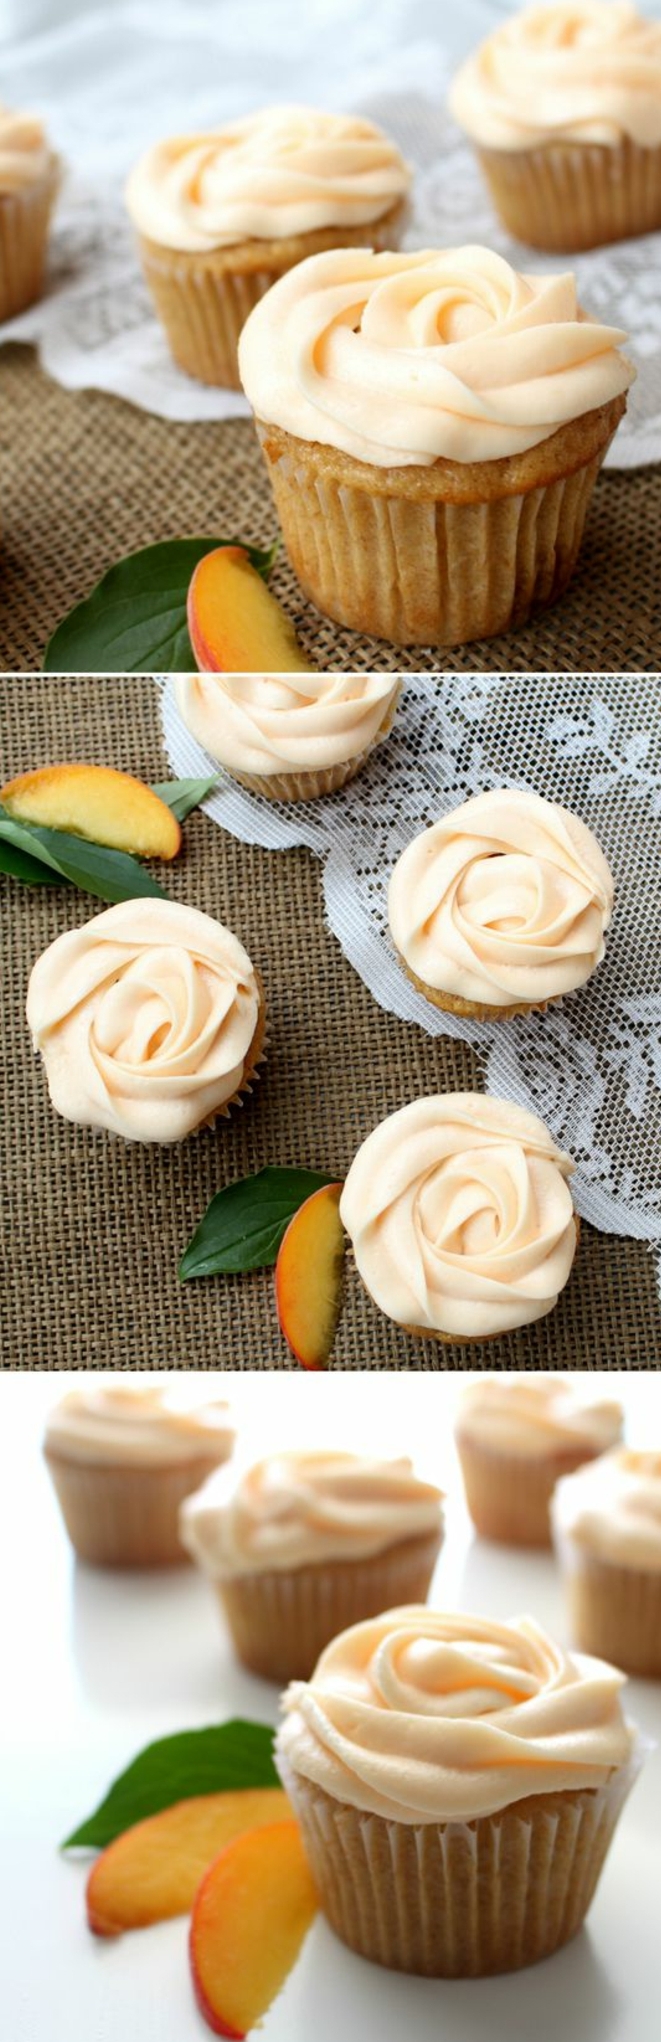 dessert facile et rapide, recette cupcake à la pêche, glacage cupcake au beurre couleur pêche en petites roses